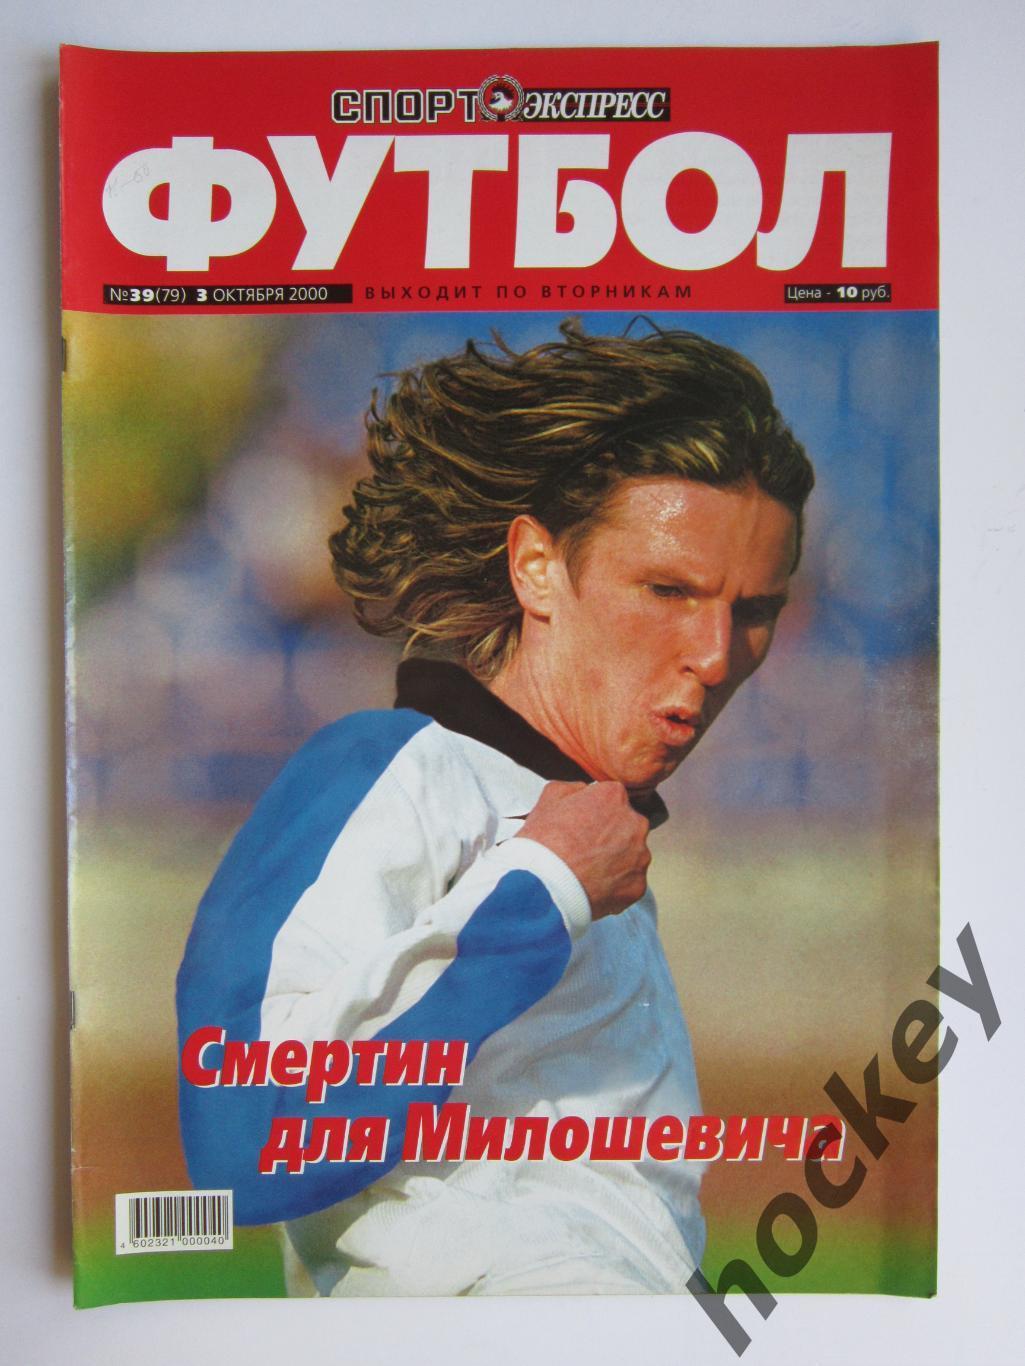 Спорт-Экспресс Футбол № 39 (79). 3 октября 2000 года. Постер Ролан Гусев